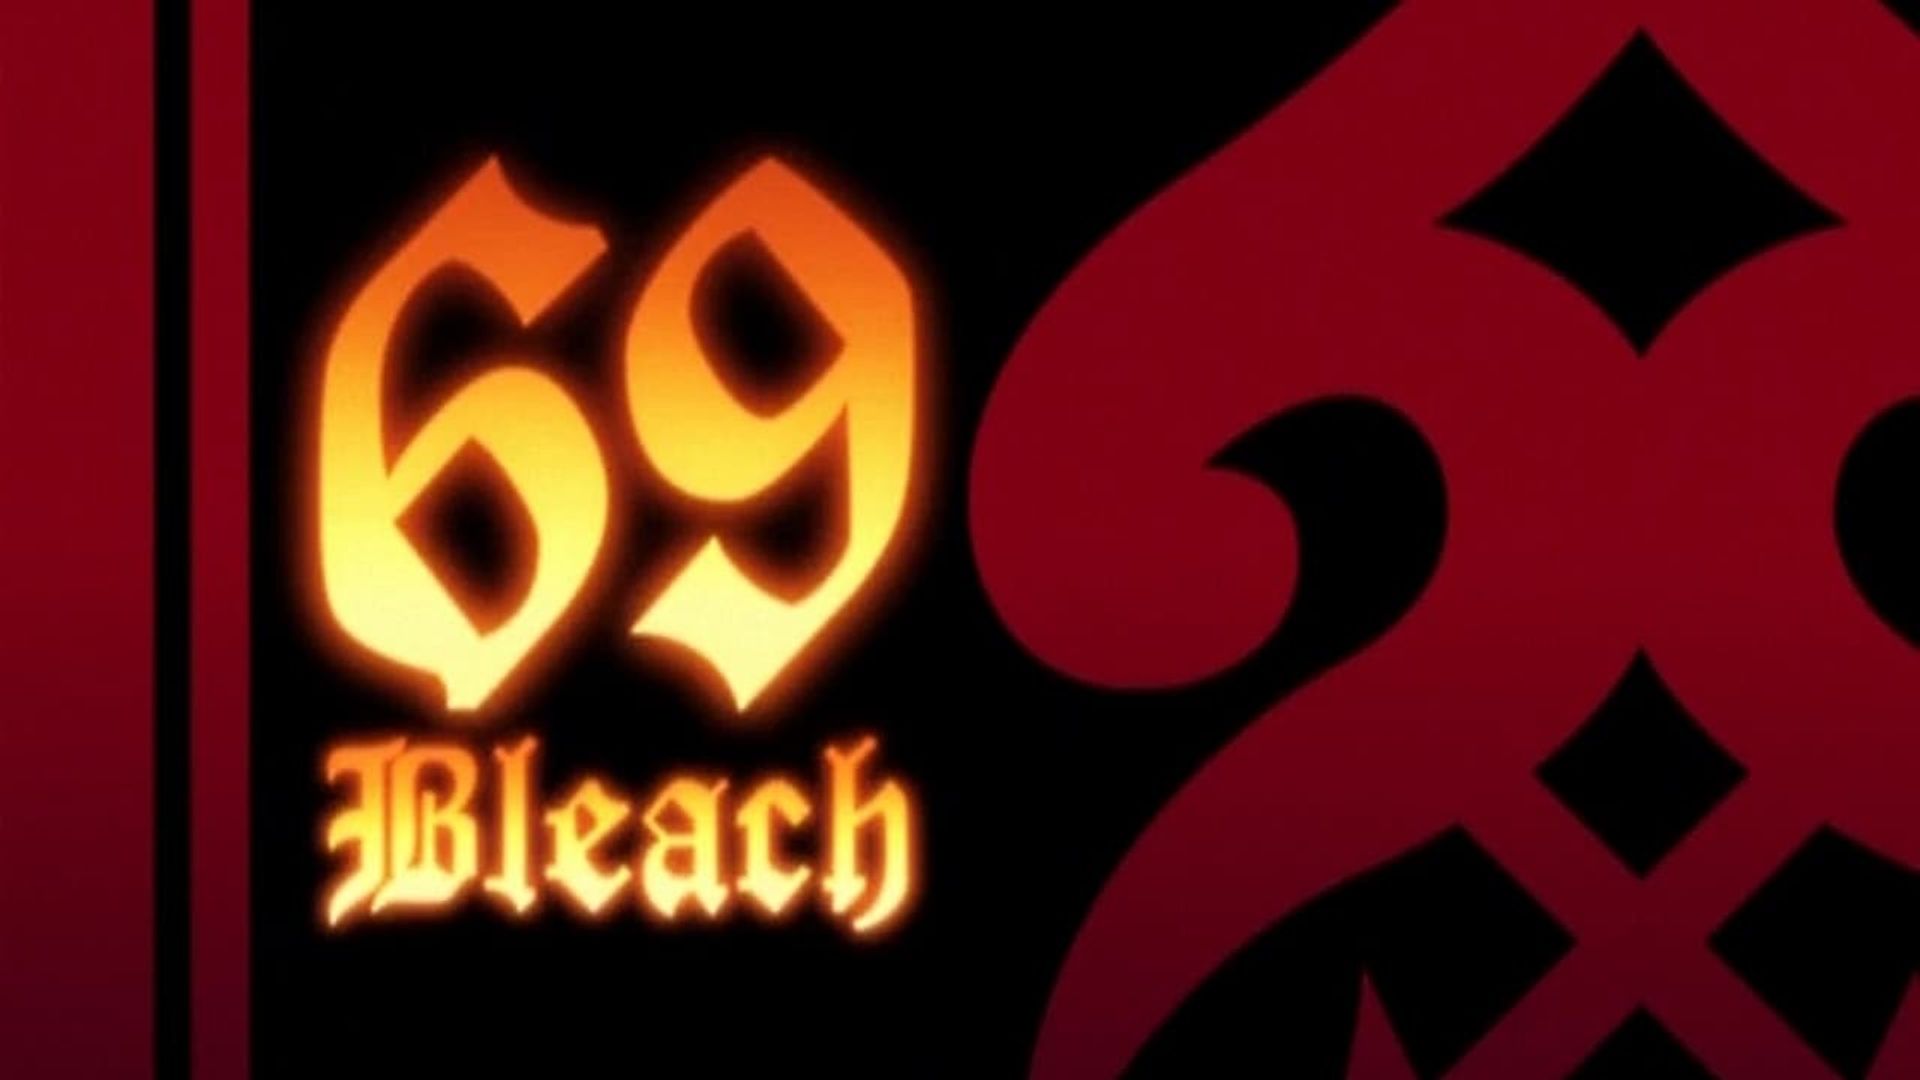 Bleach background